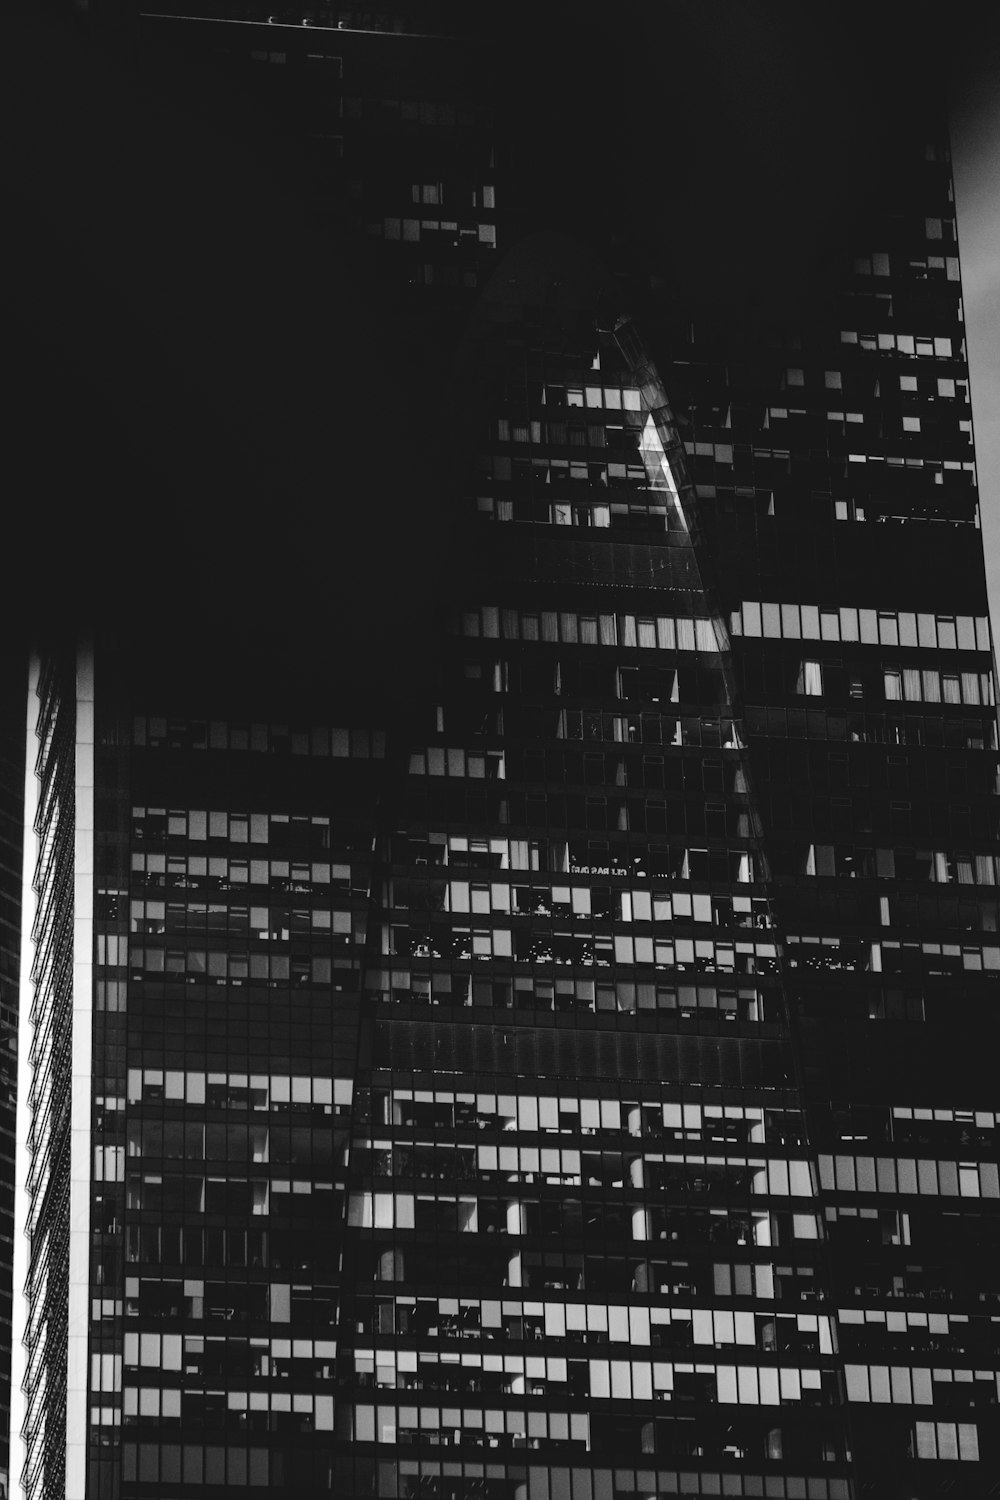 Photo en niveaux de gris des bâtiments de la ville